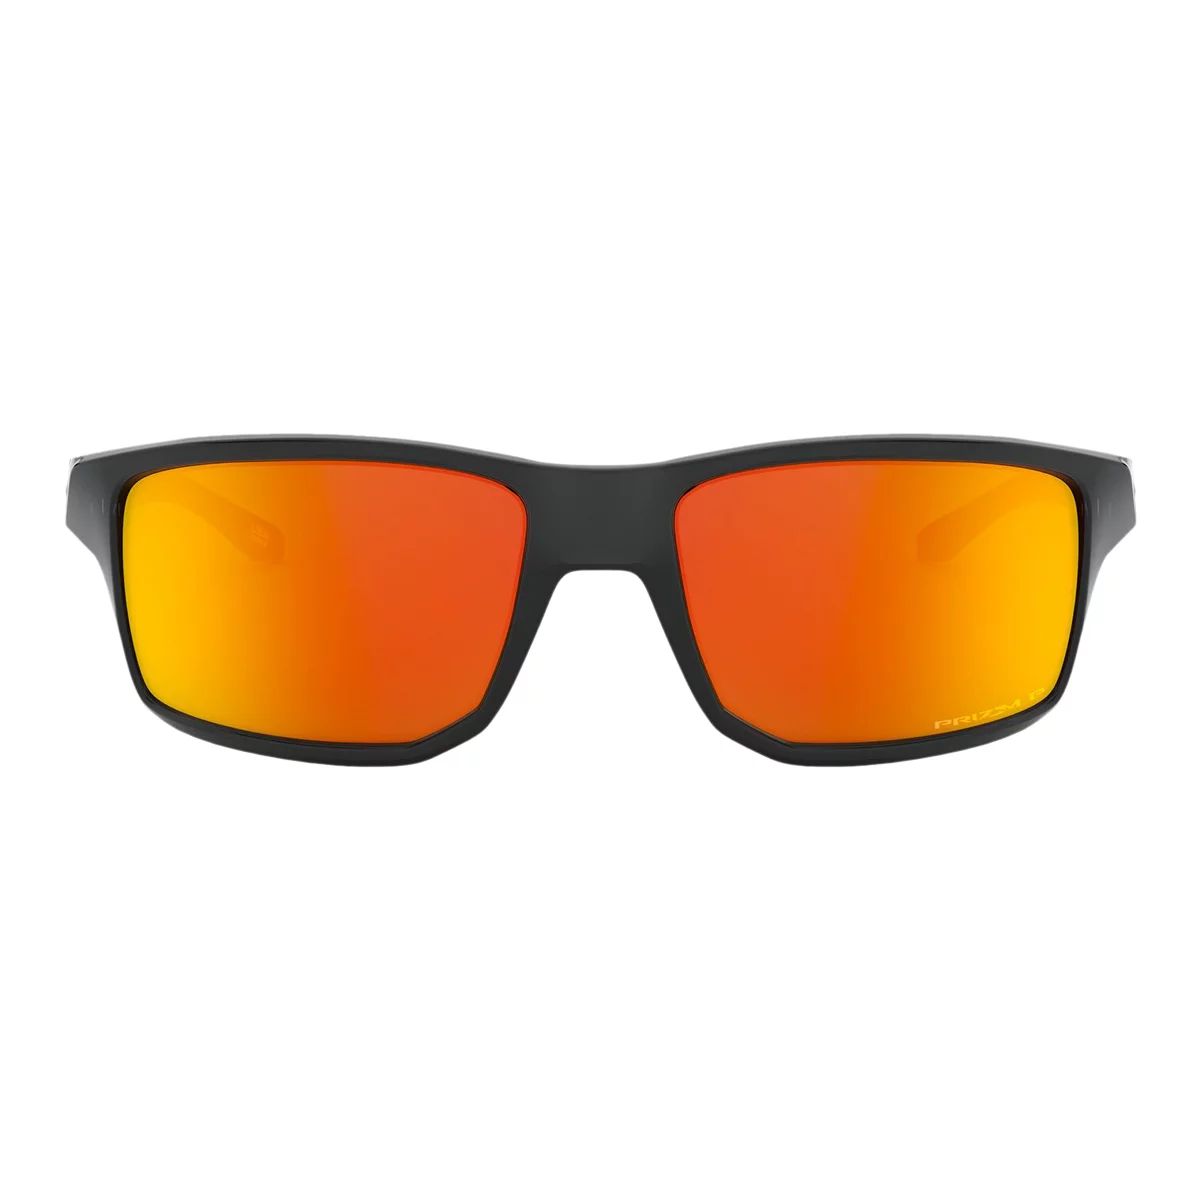 Image of Oakley Men's/Women's Gibston Rectangular Sunglasses Polarized